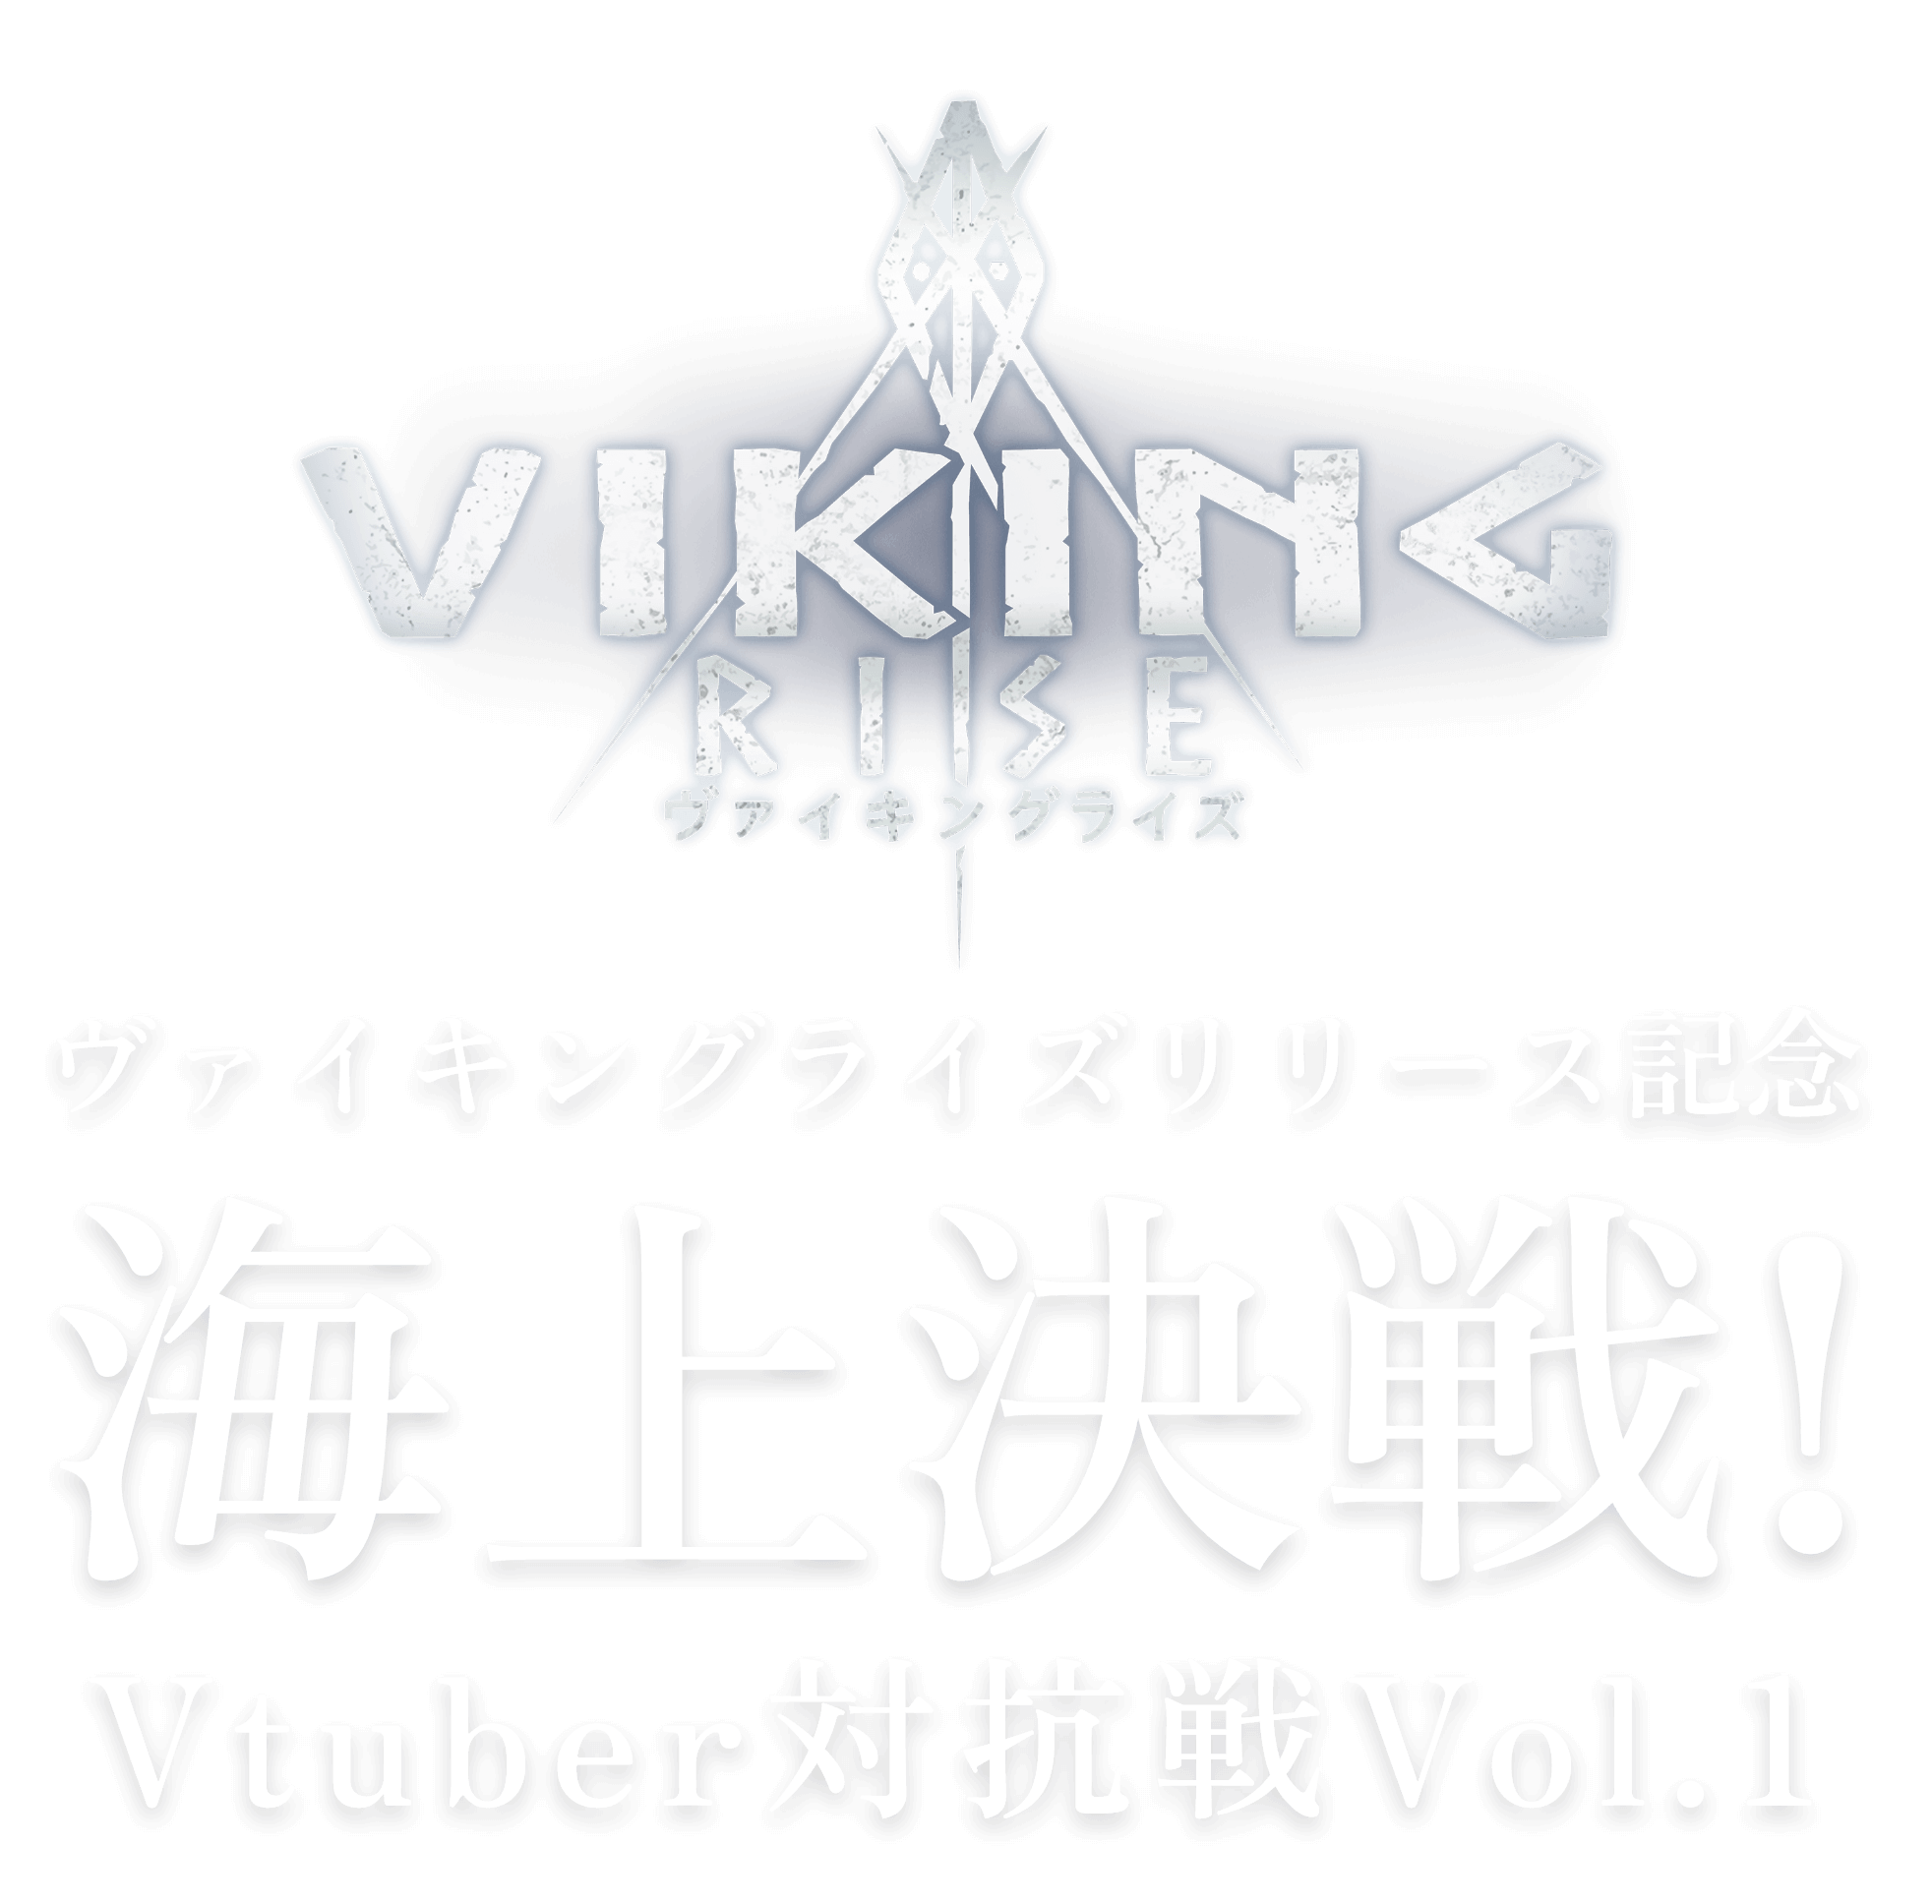 VIKING RISE ロゴ